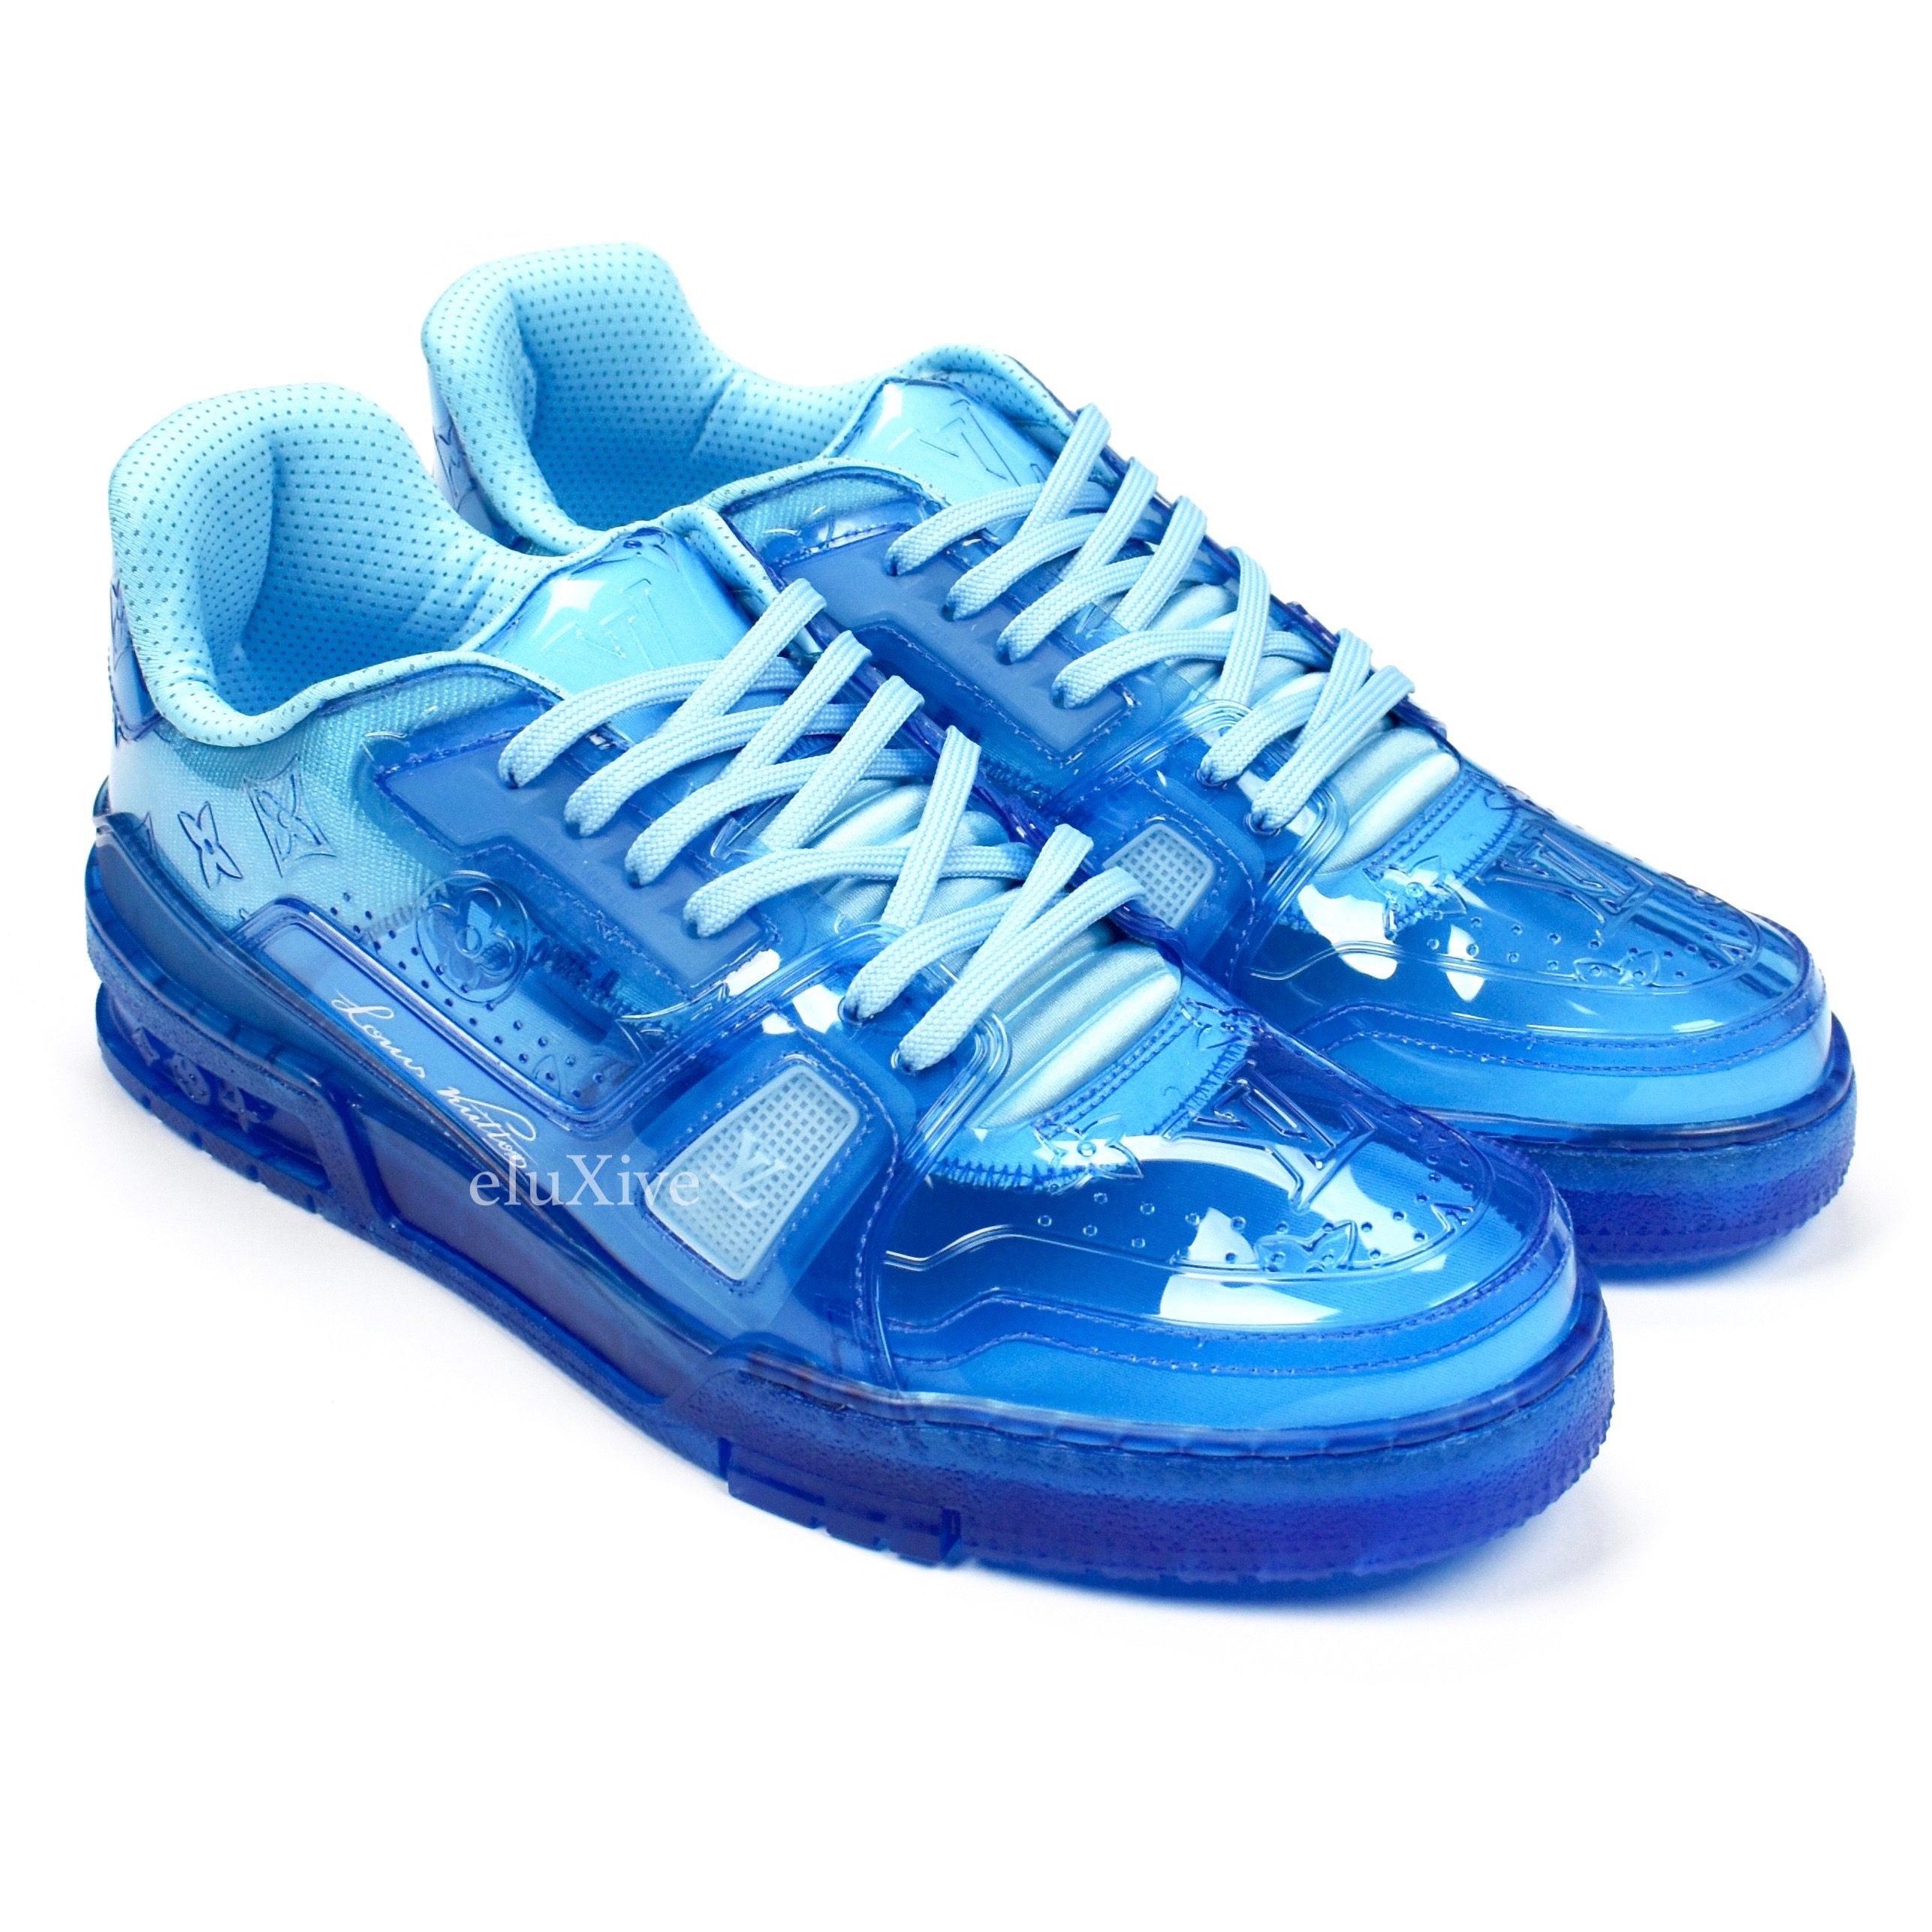 Louis Vuitton Men's Transparent Clear Blue Trainer sneakers Size 7.5  US